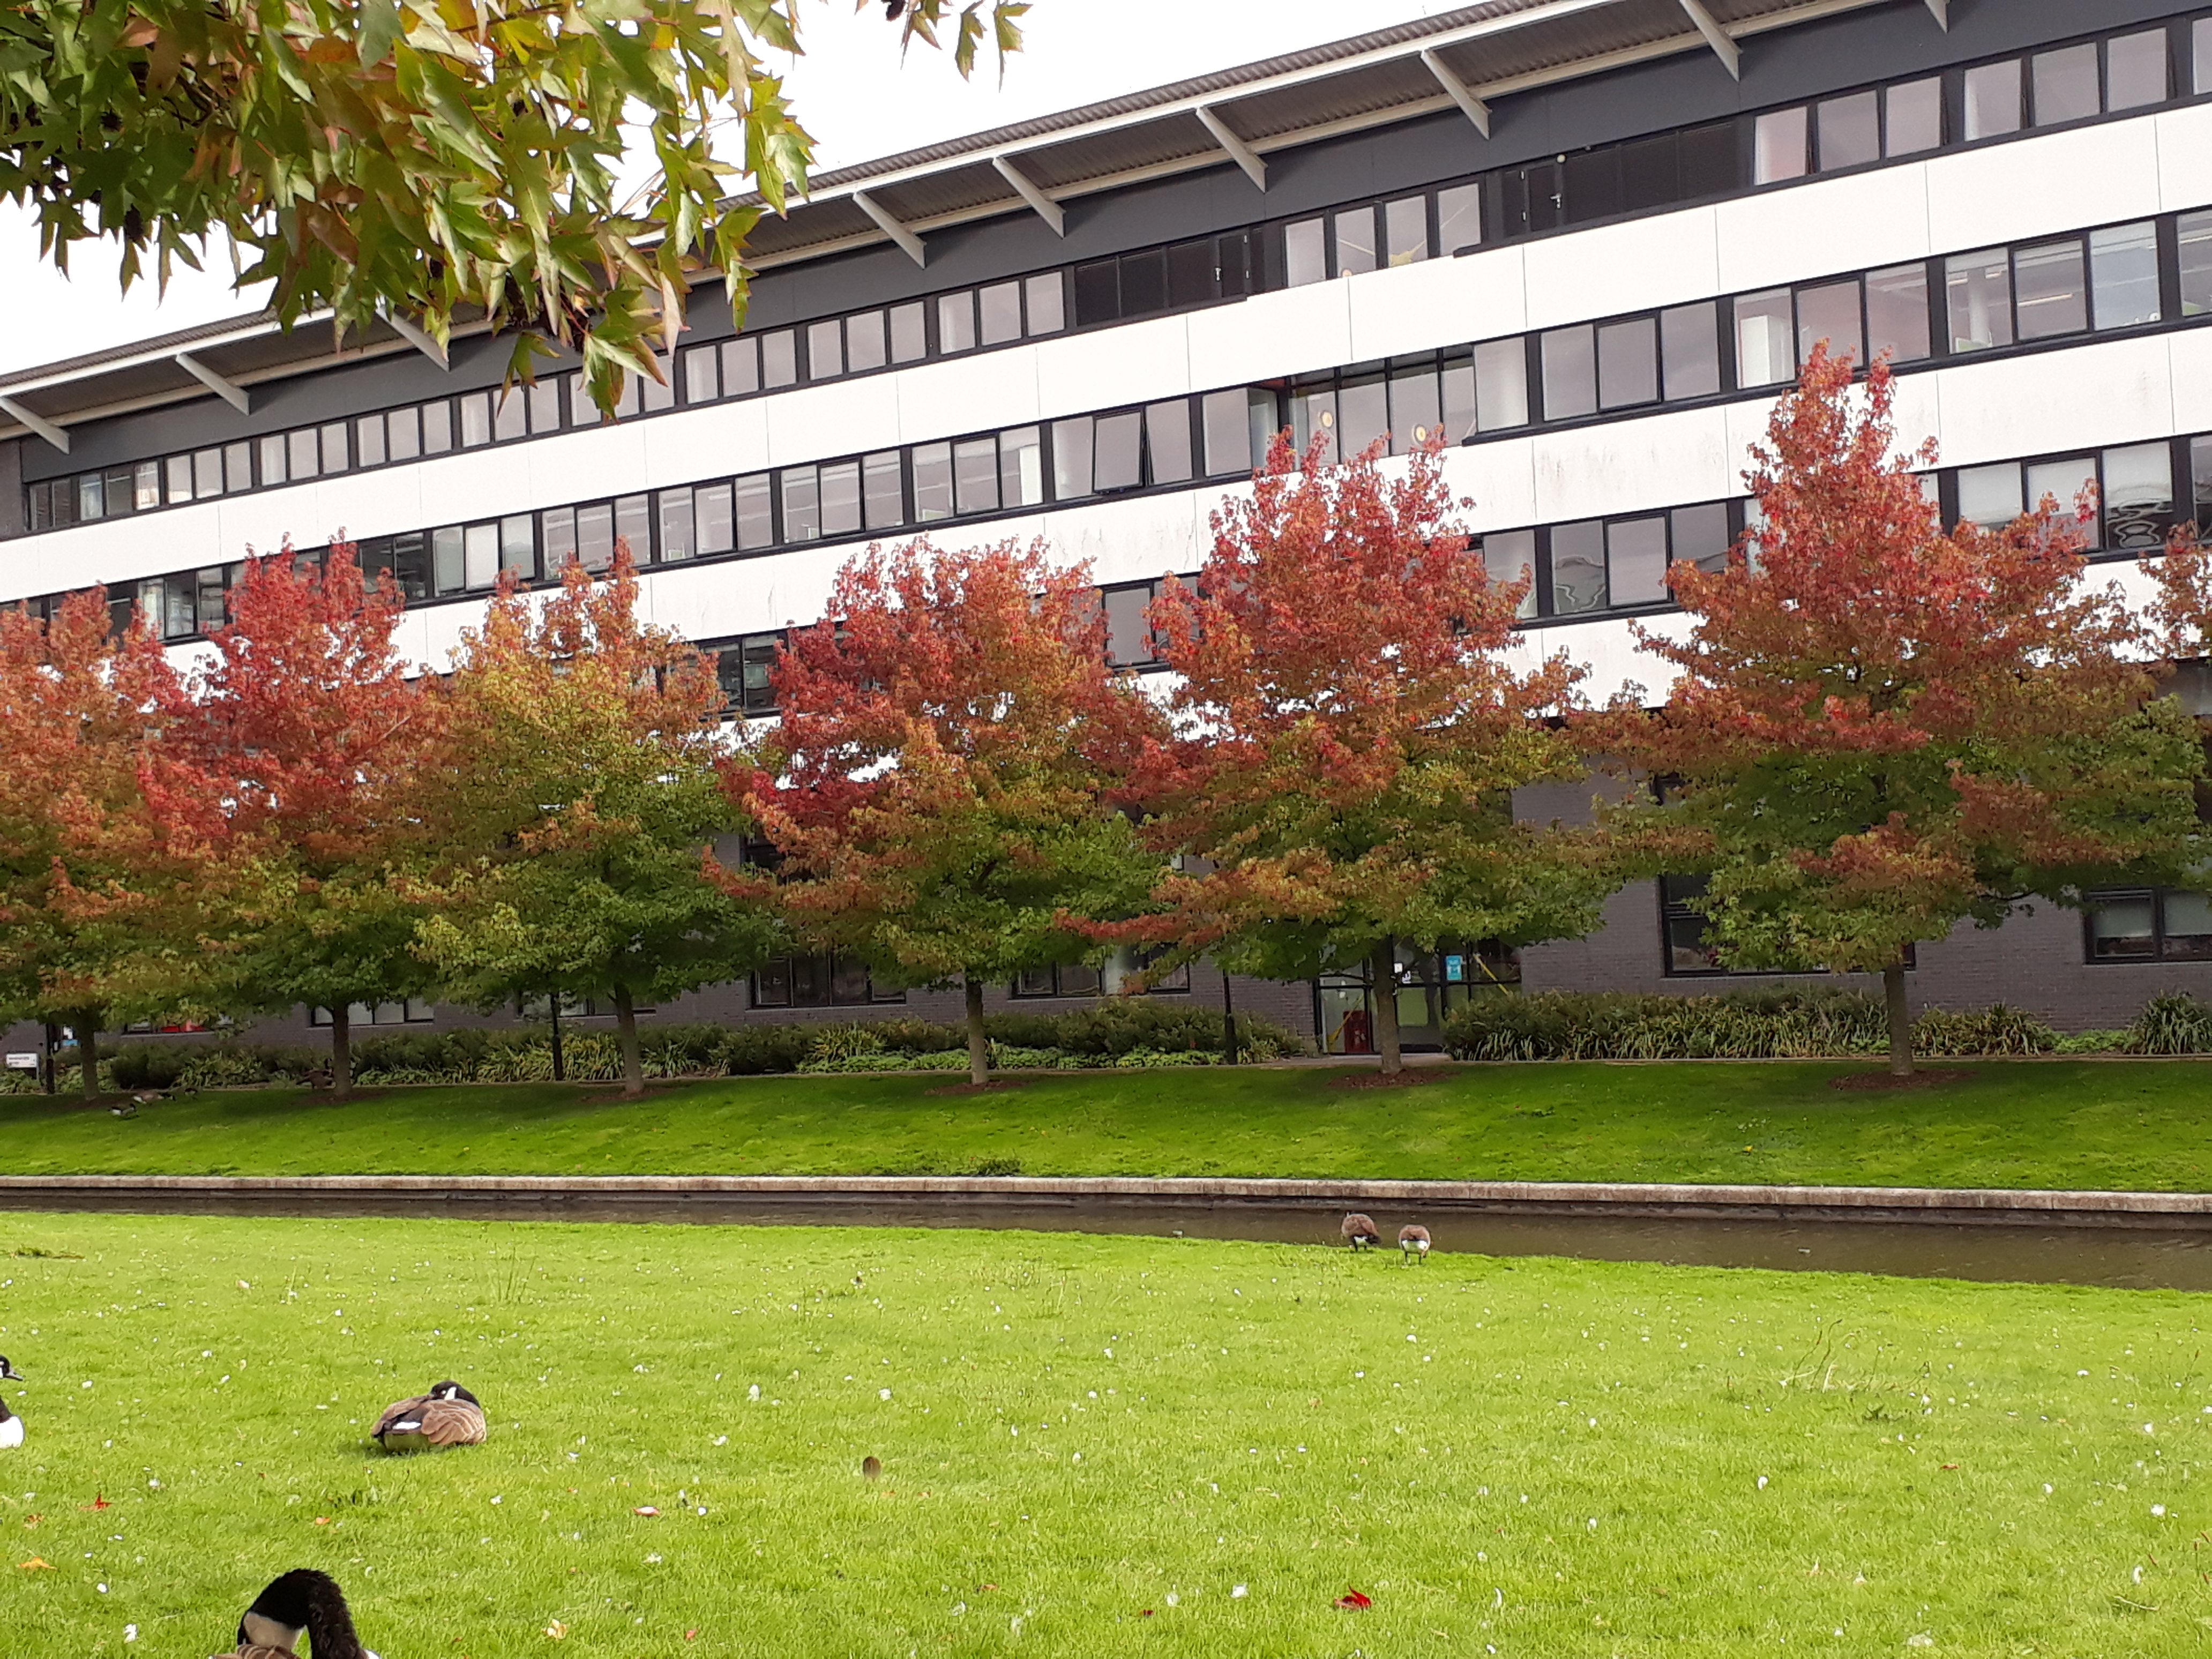 warwick campus in autumn